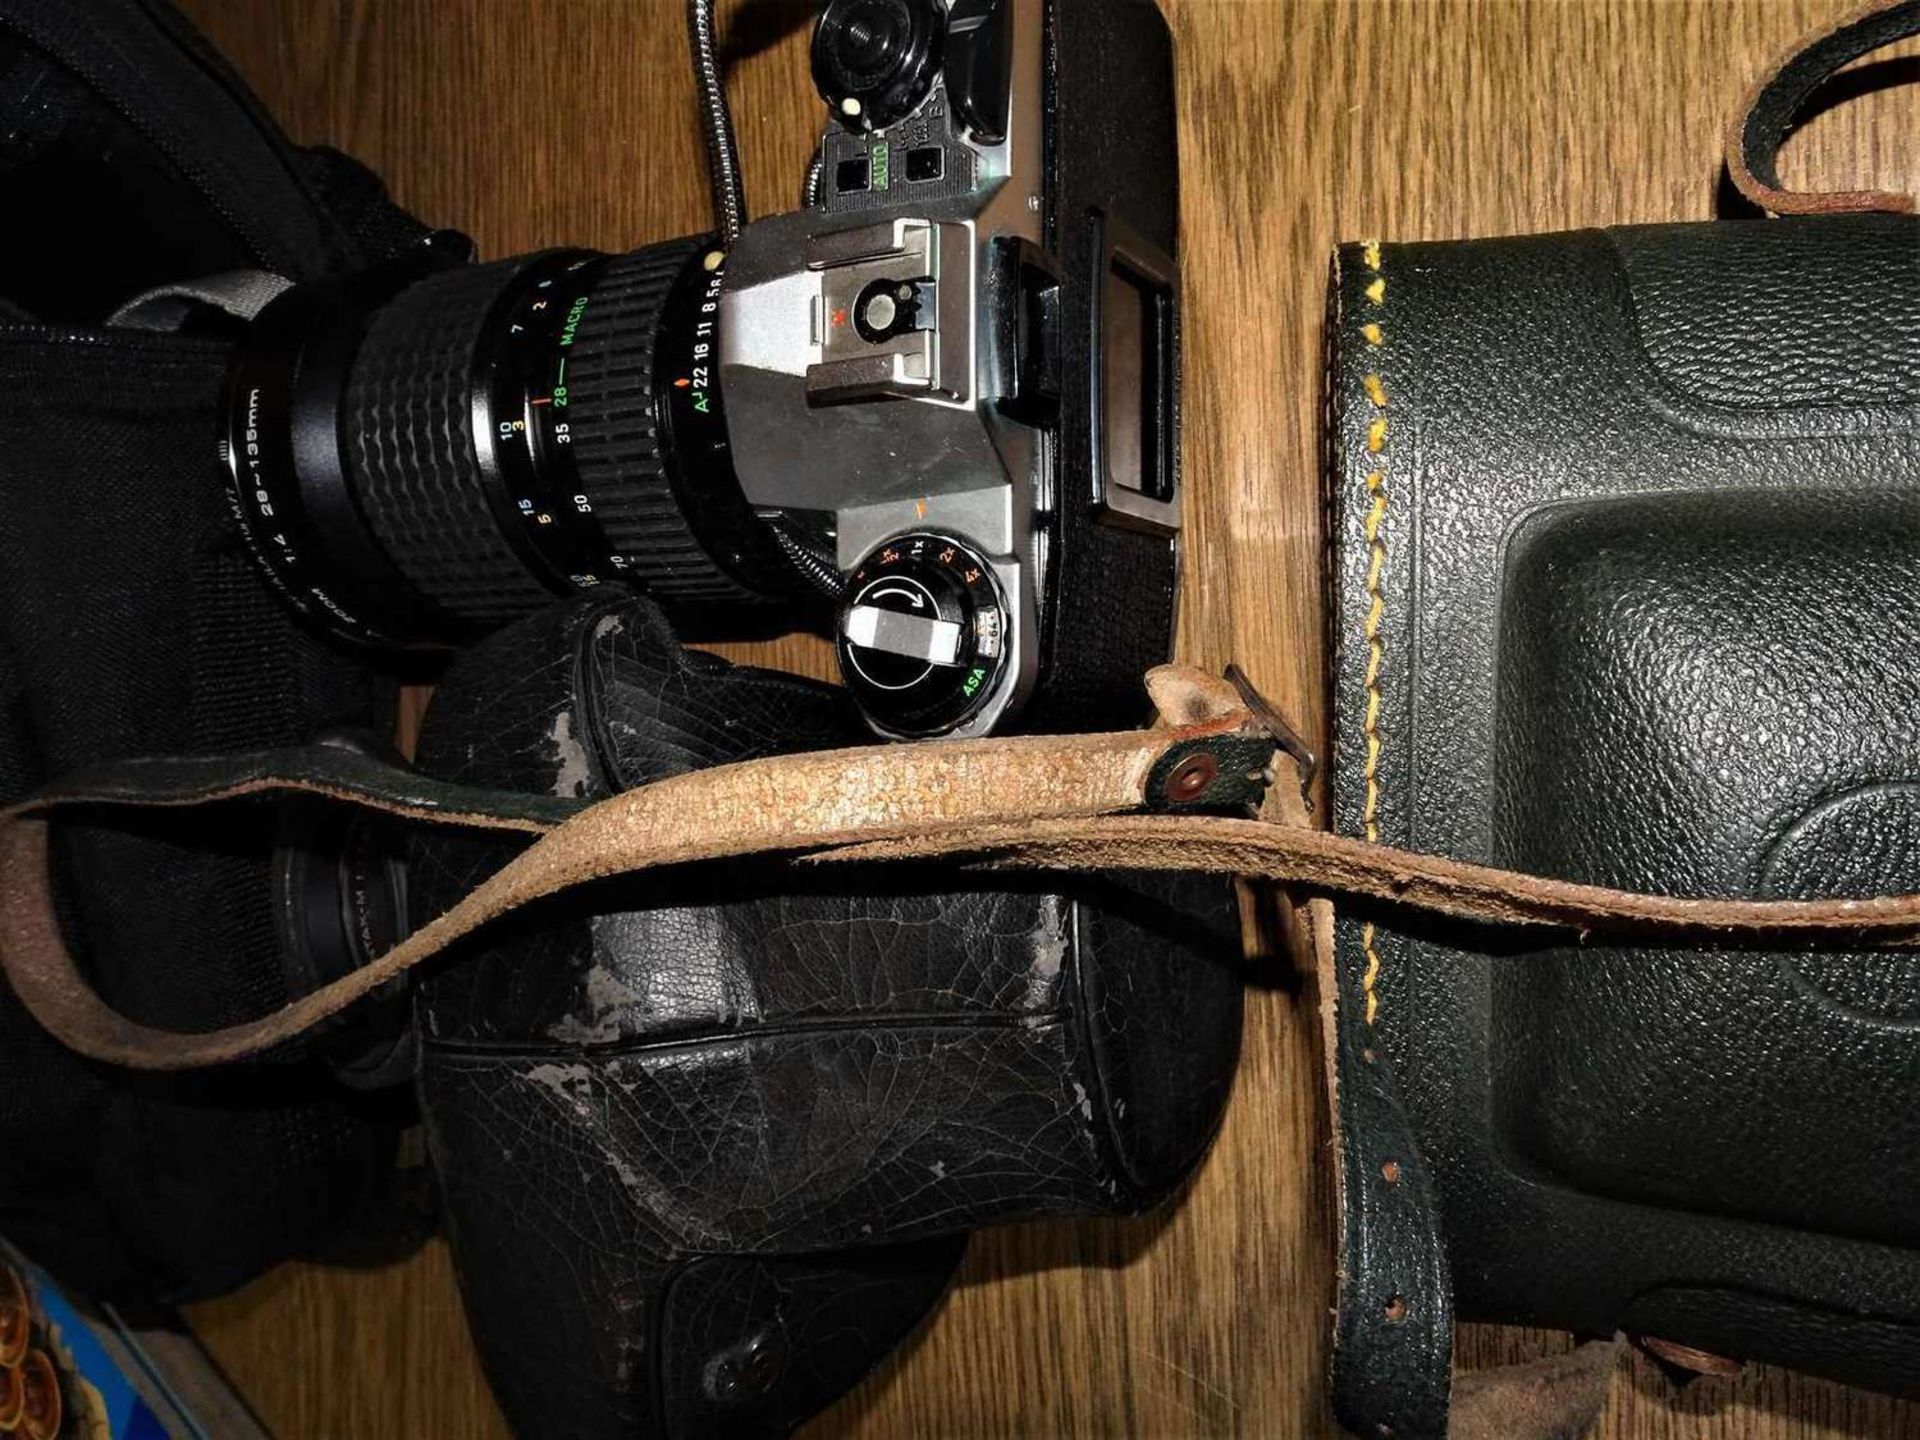 1 Lot Kamera und Objektive, dabei eine Pentax mit großem Objektiv 28/135 mm, sowie eine Plastikkam - Bild 2 aus 2